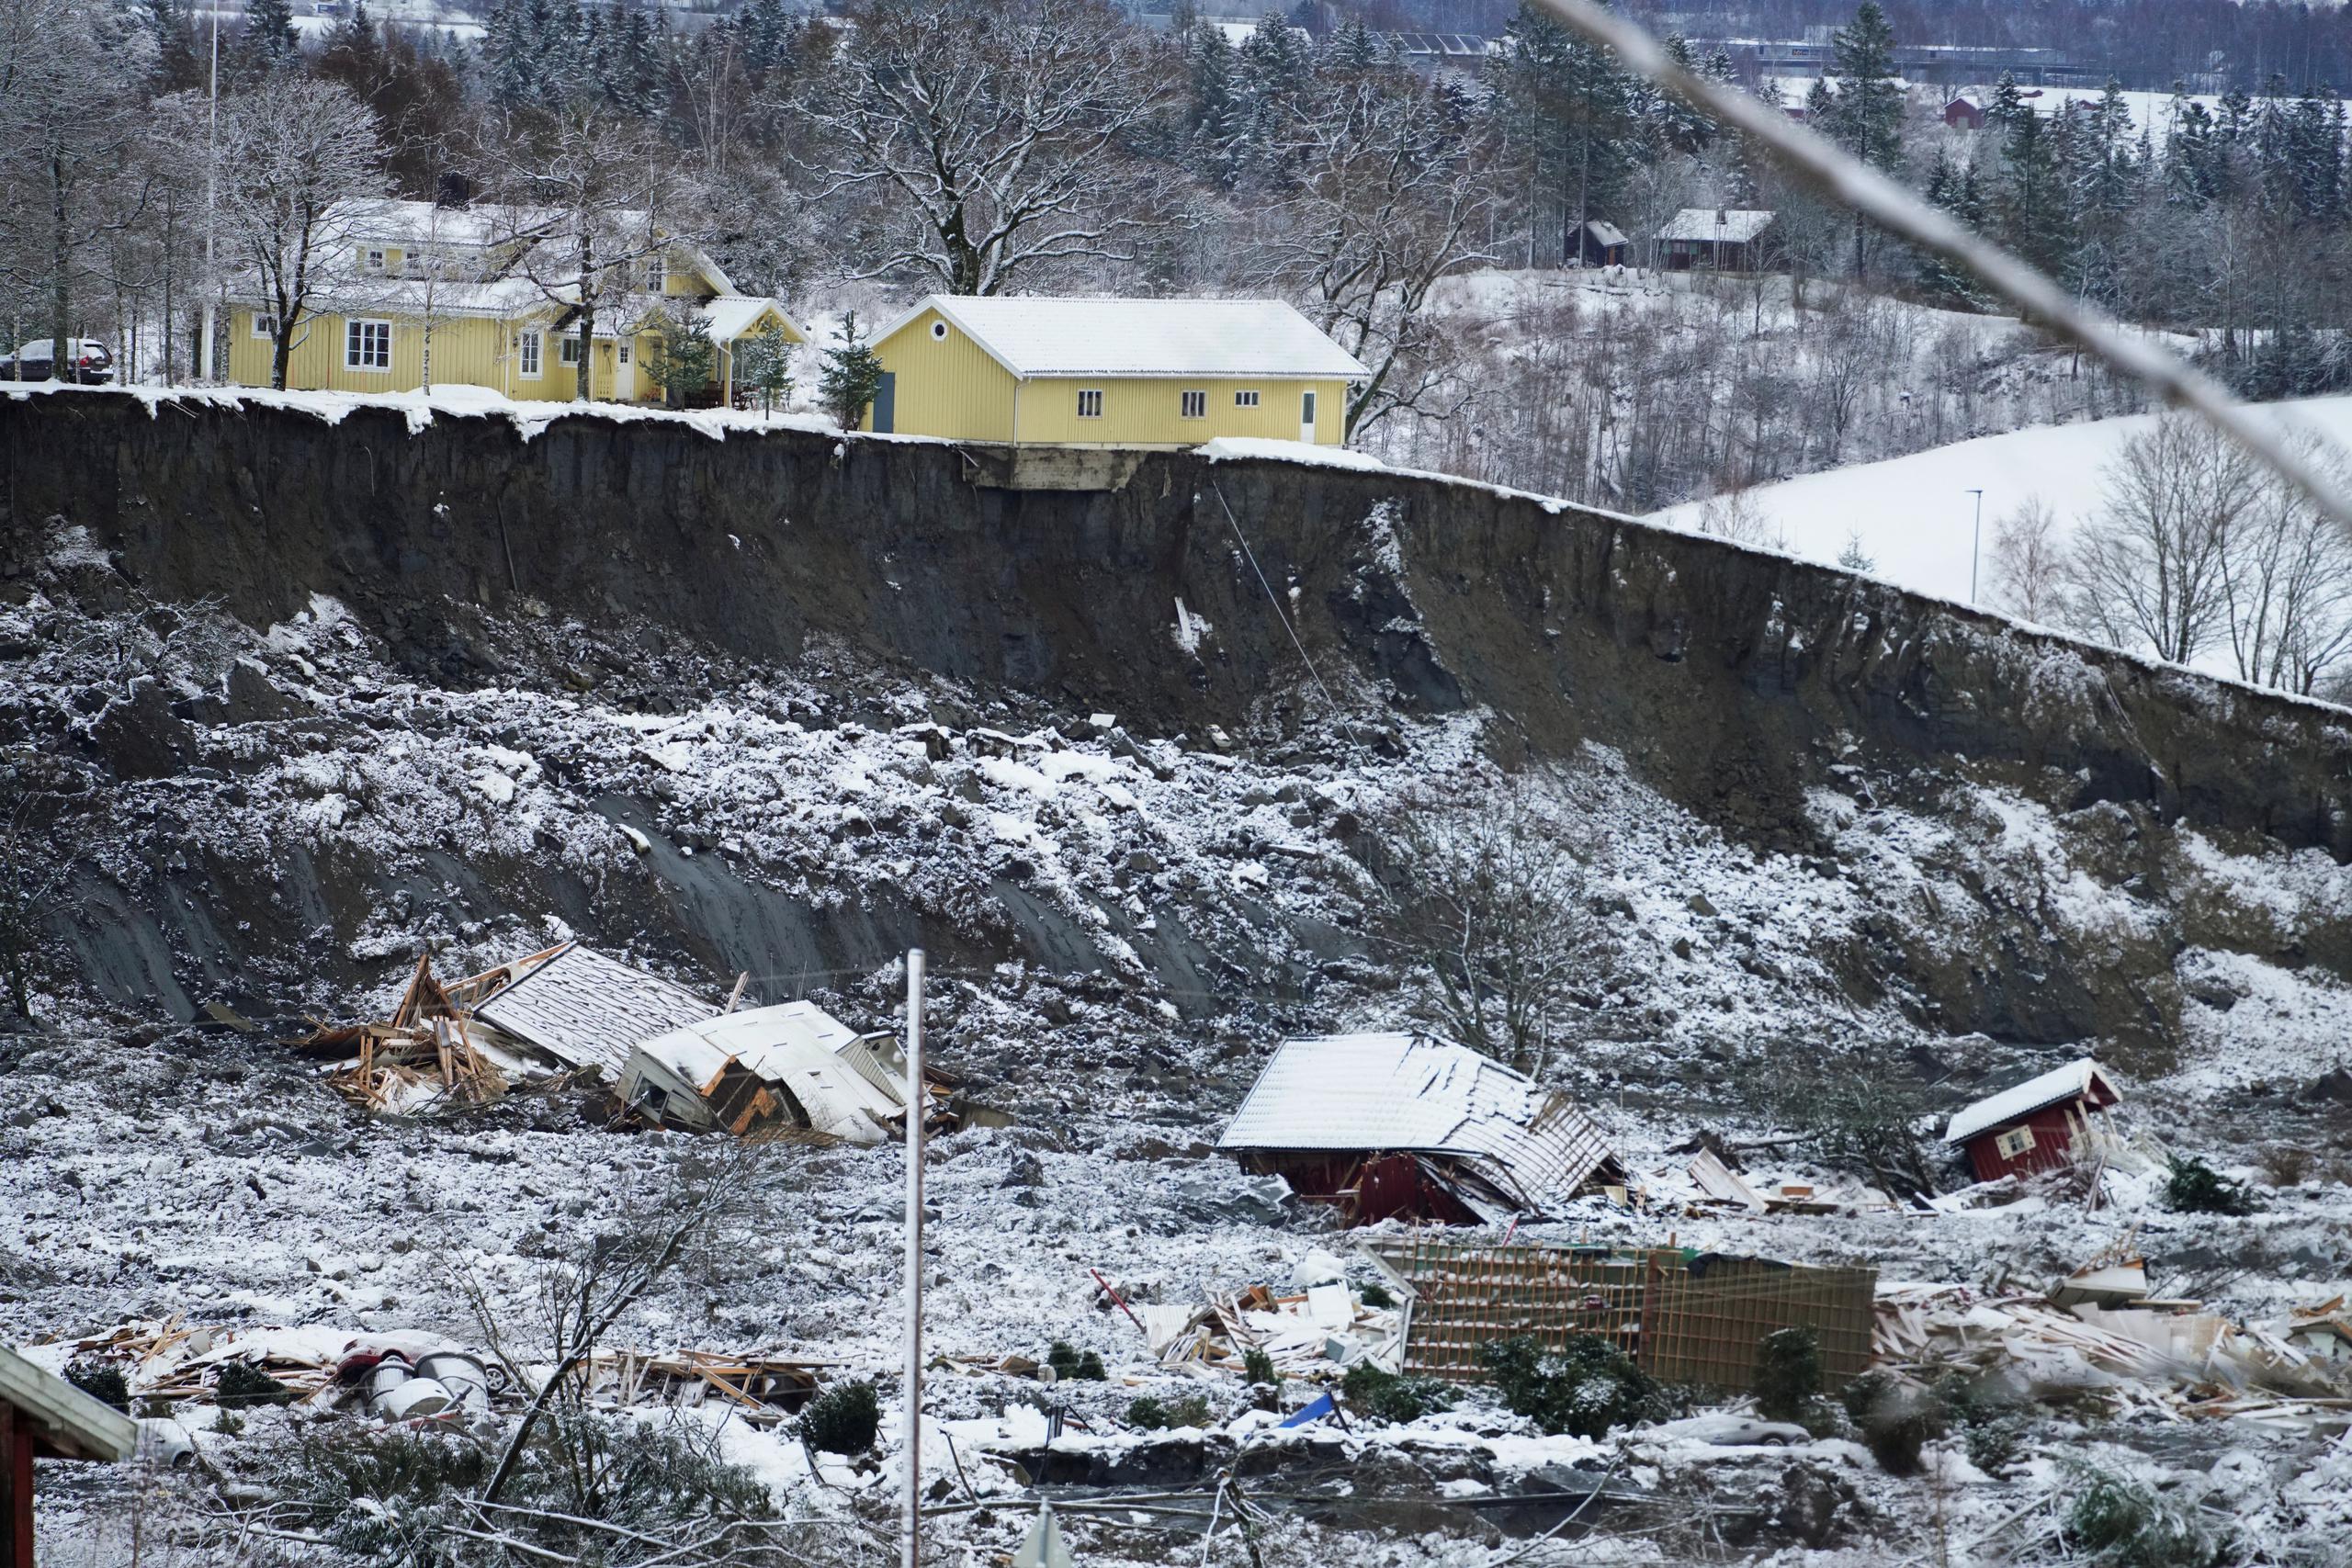 Medios noruegos informaron de que varios geólogos e hidrólogos advirtieron en 2008 a las autoridades municipales de “problemas de erosión significativos” en la zona.